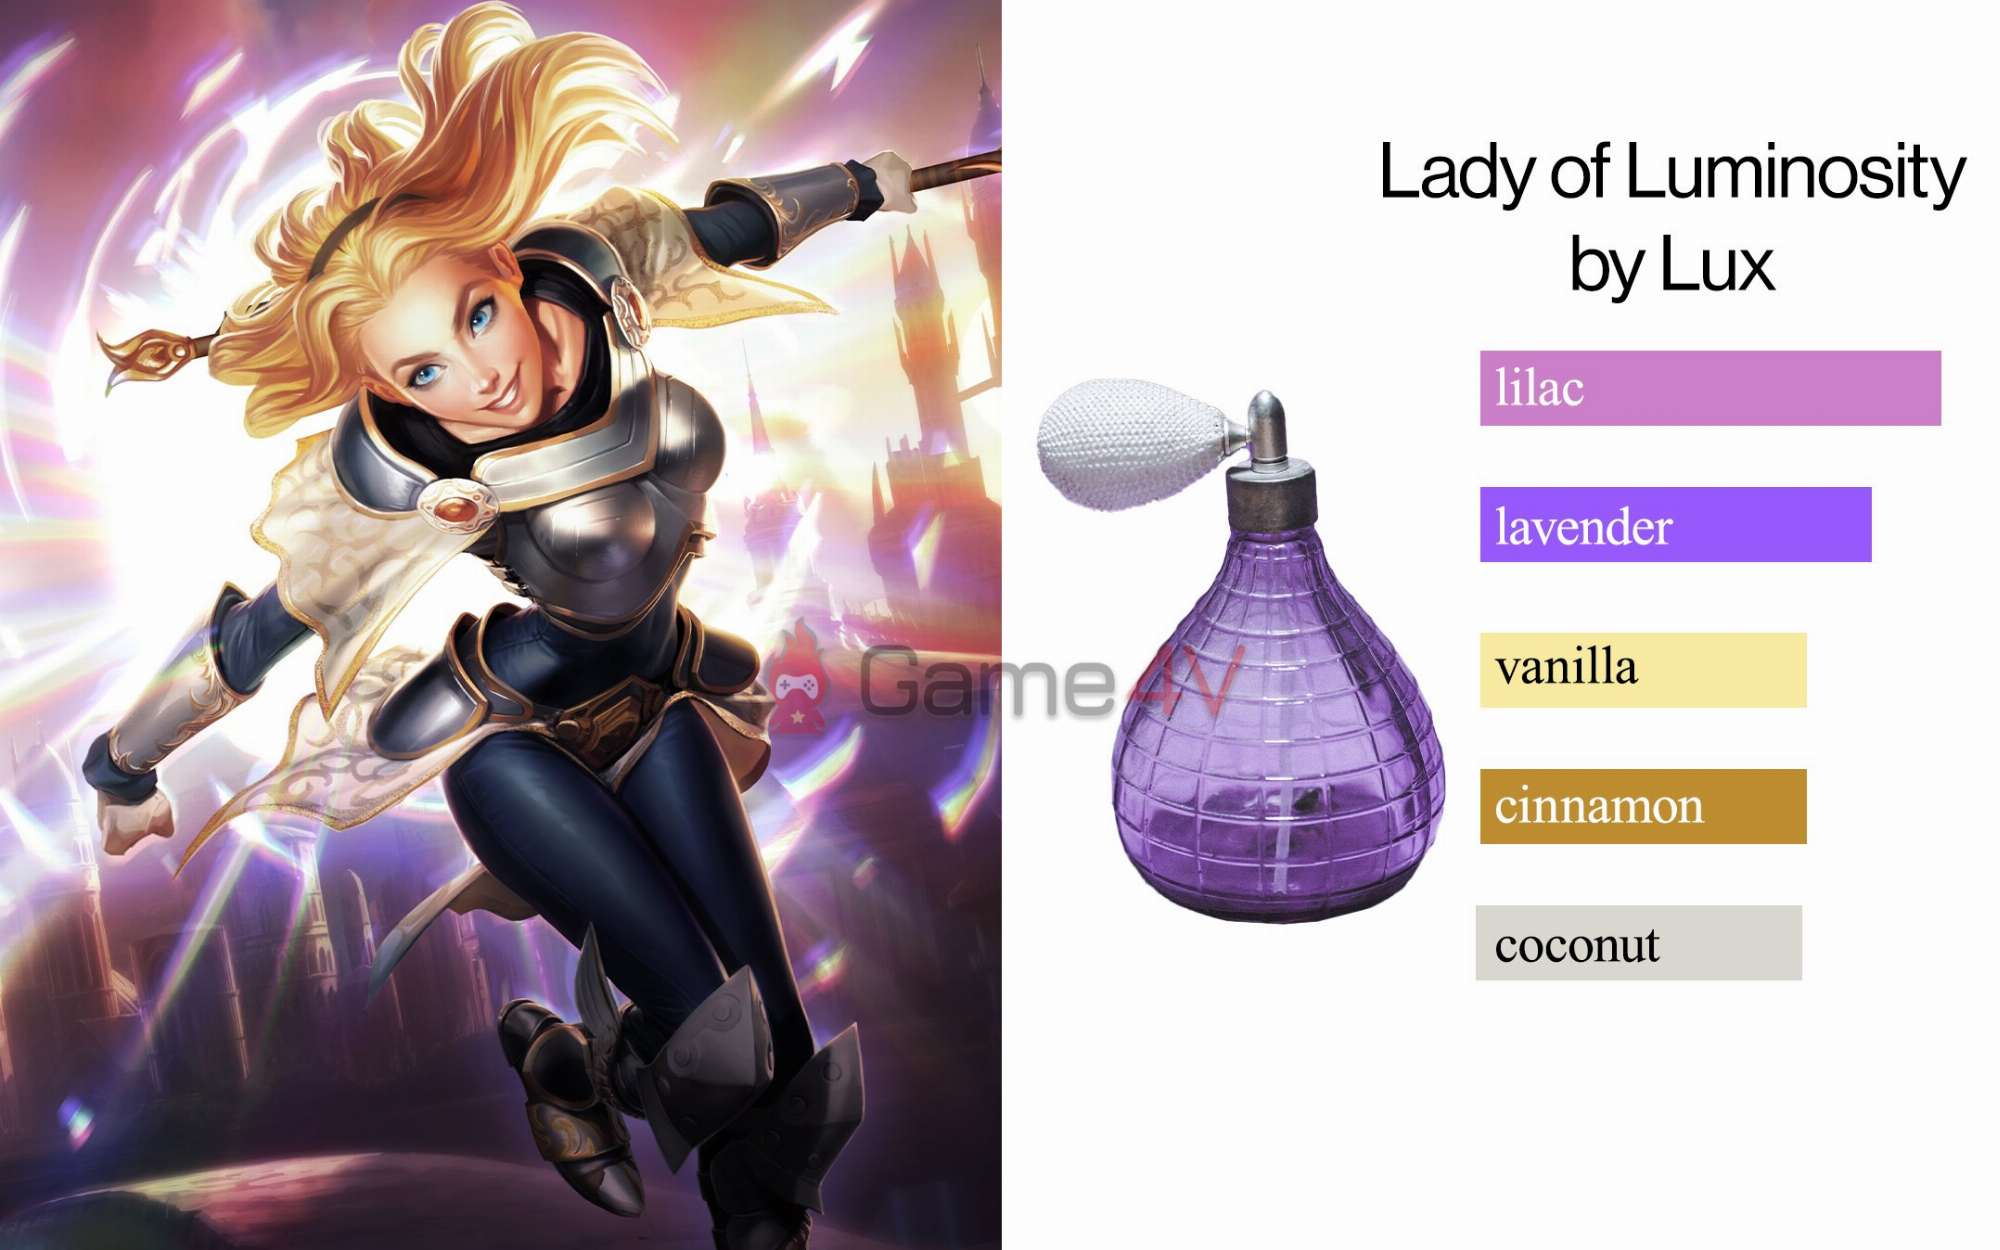 Lux mang mùi hương Tử Đinh Hương nhiều nhất dựa trên chia sẻ của Riot Games.